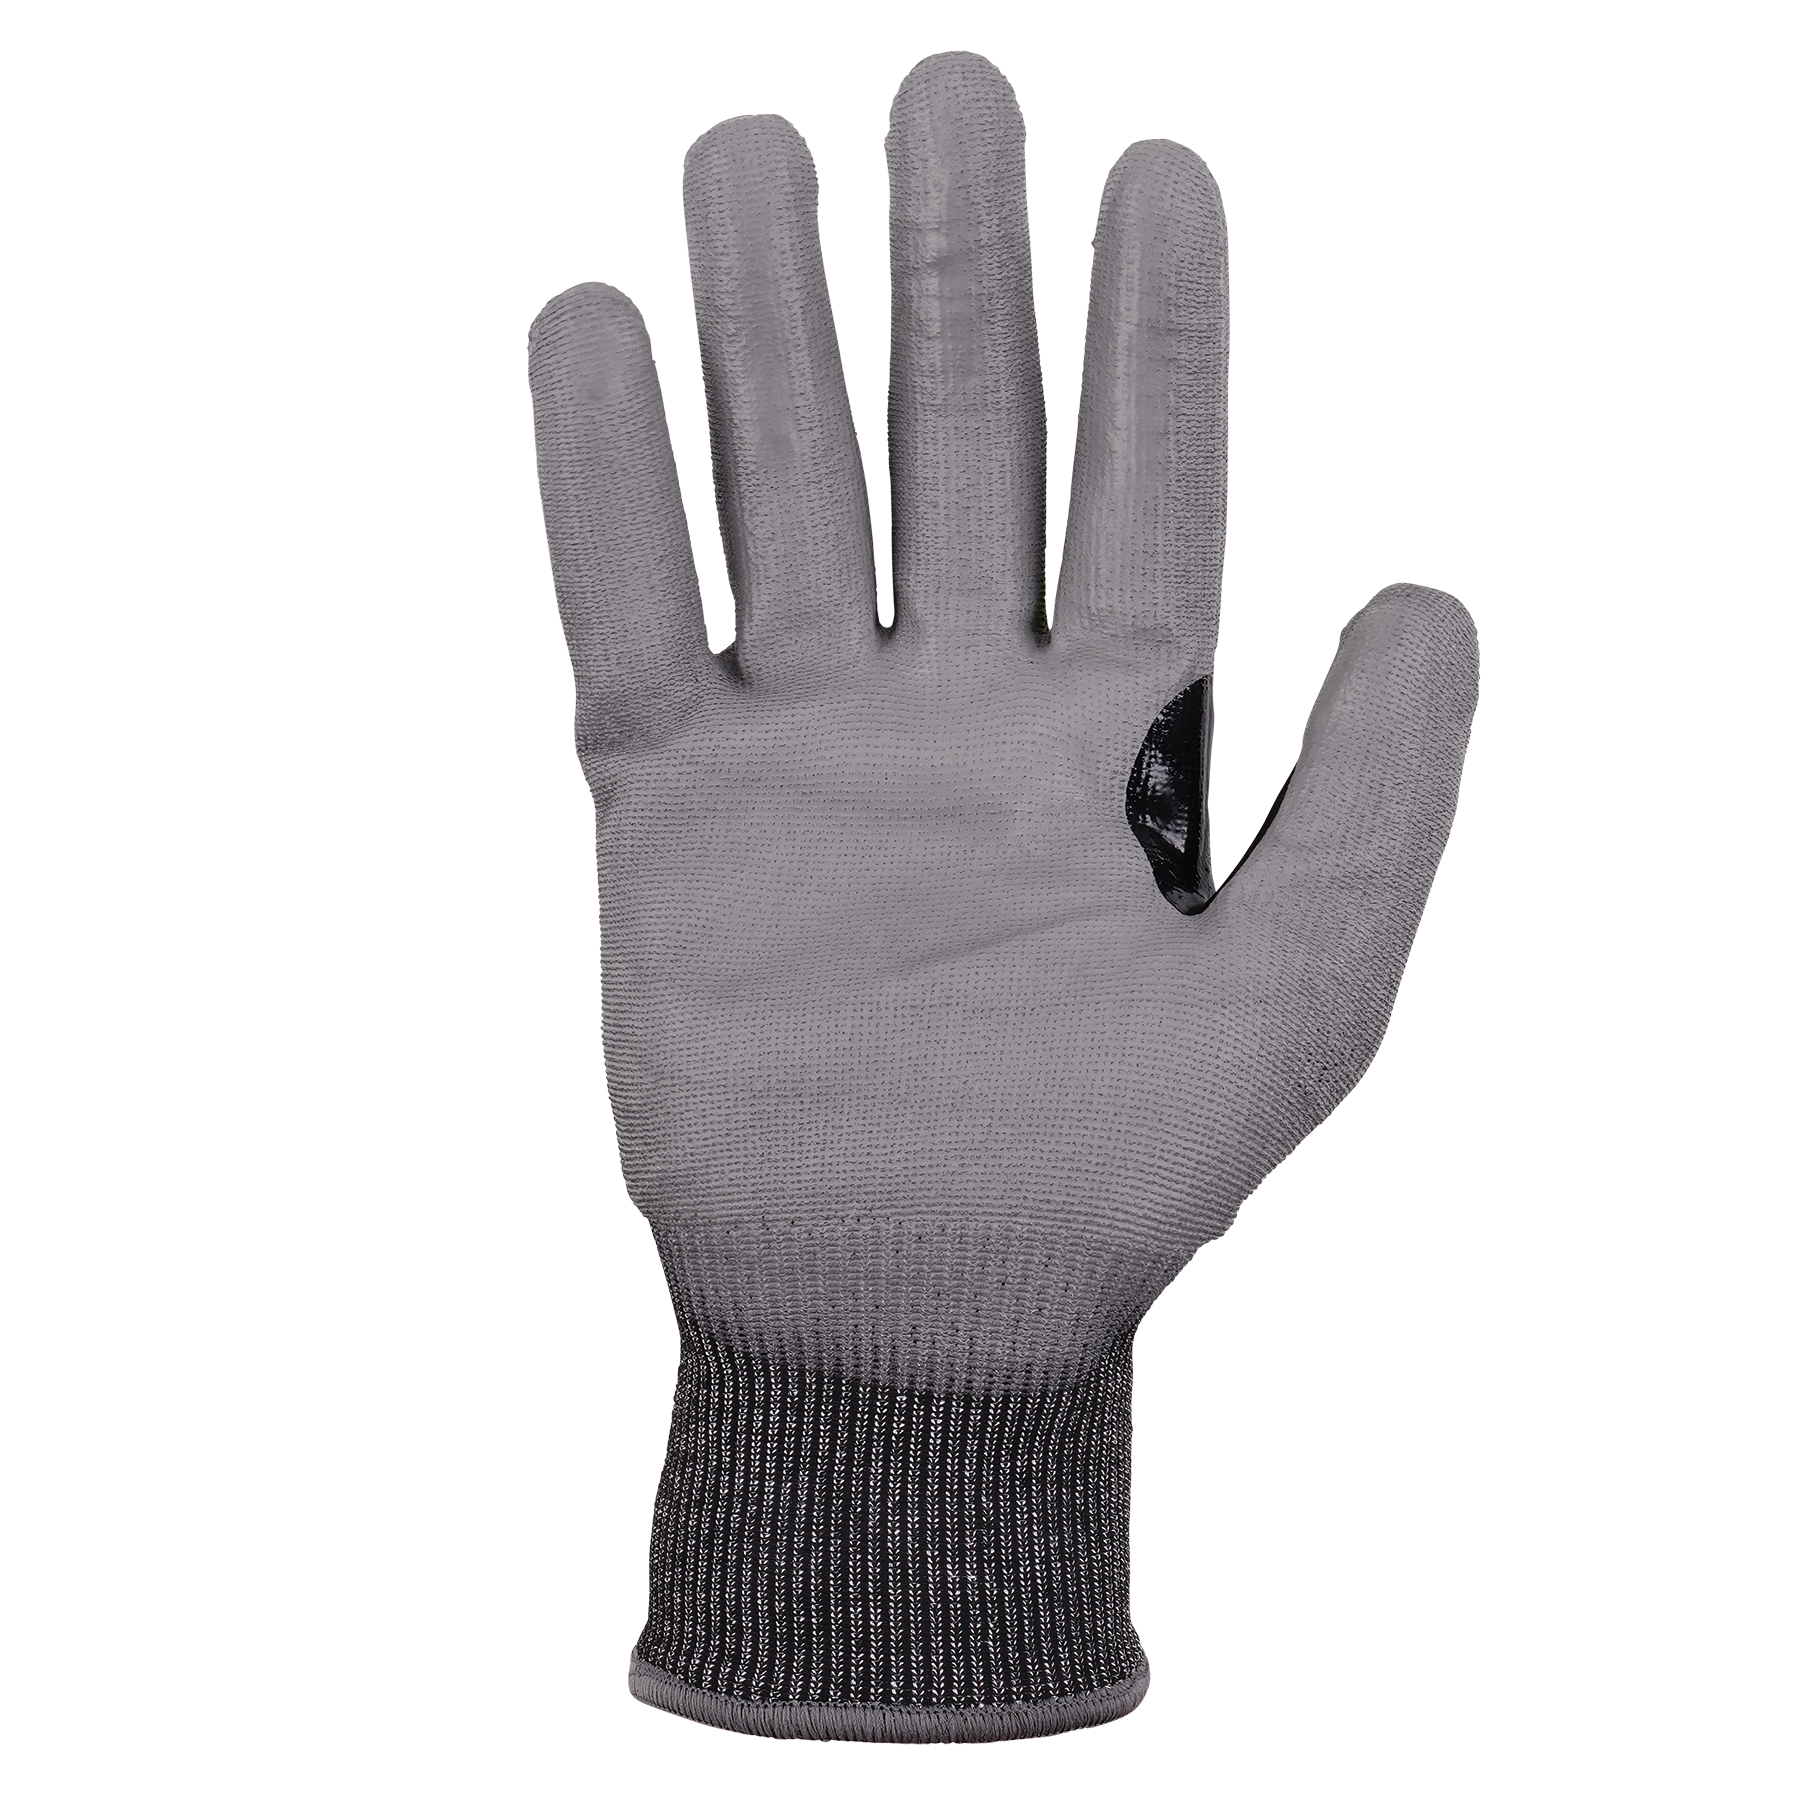 ANSI/ISEA 105-2016 A7 PU Coated CR Gloves